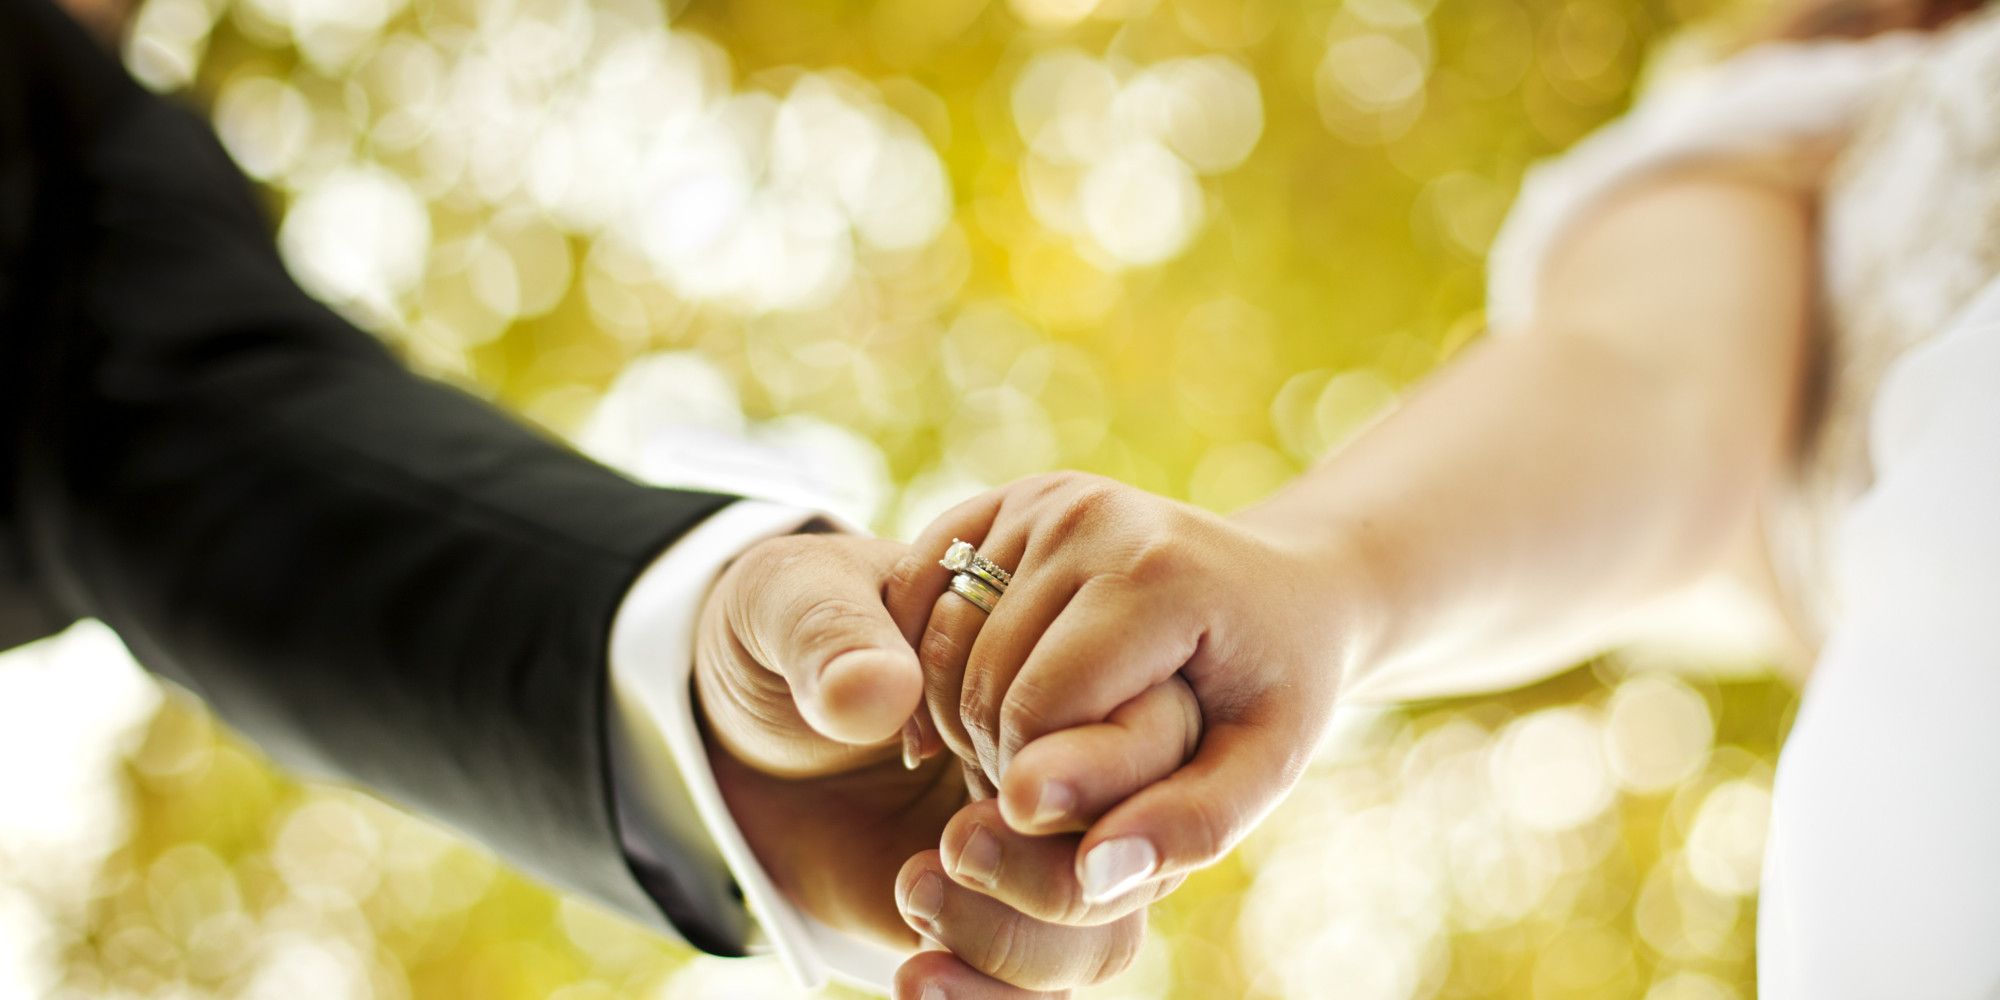 Matrimonio: i lati negativi che mai nessuno confesserà